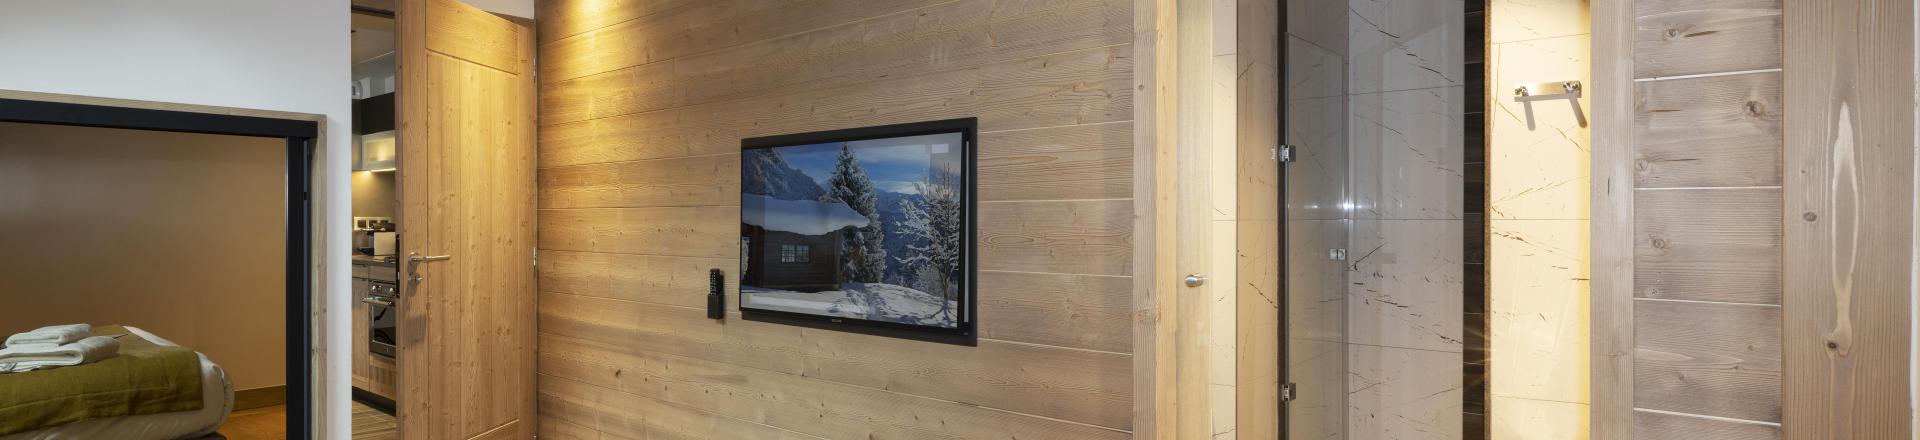 Vacances en montagne Appartement 4 pièces 8 personnes - Résidence Alpen Lodge - La Rosière - Chambre de maître